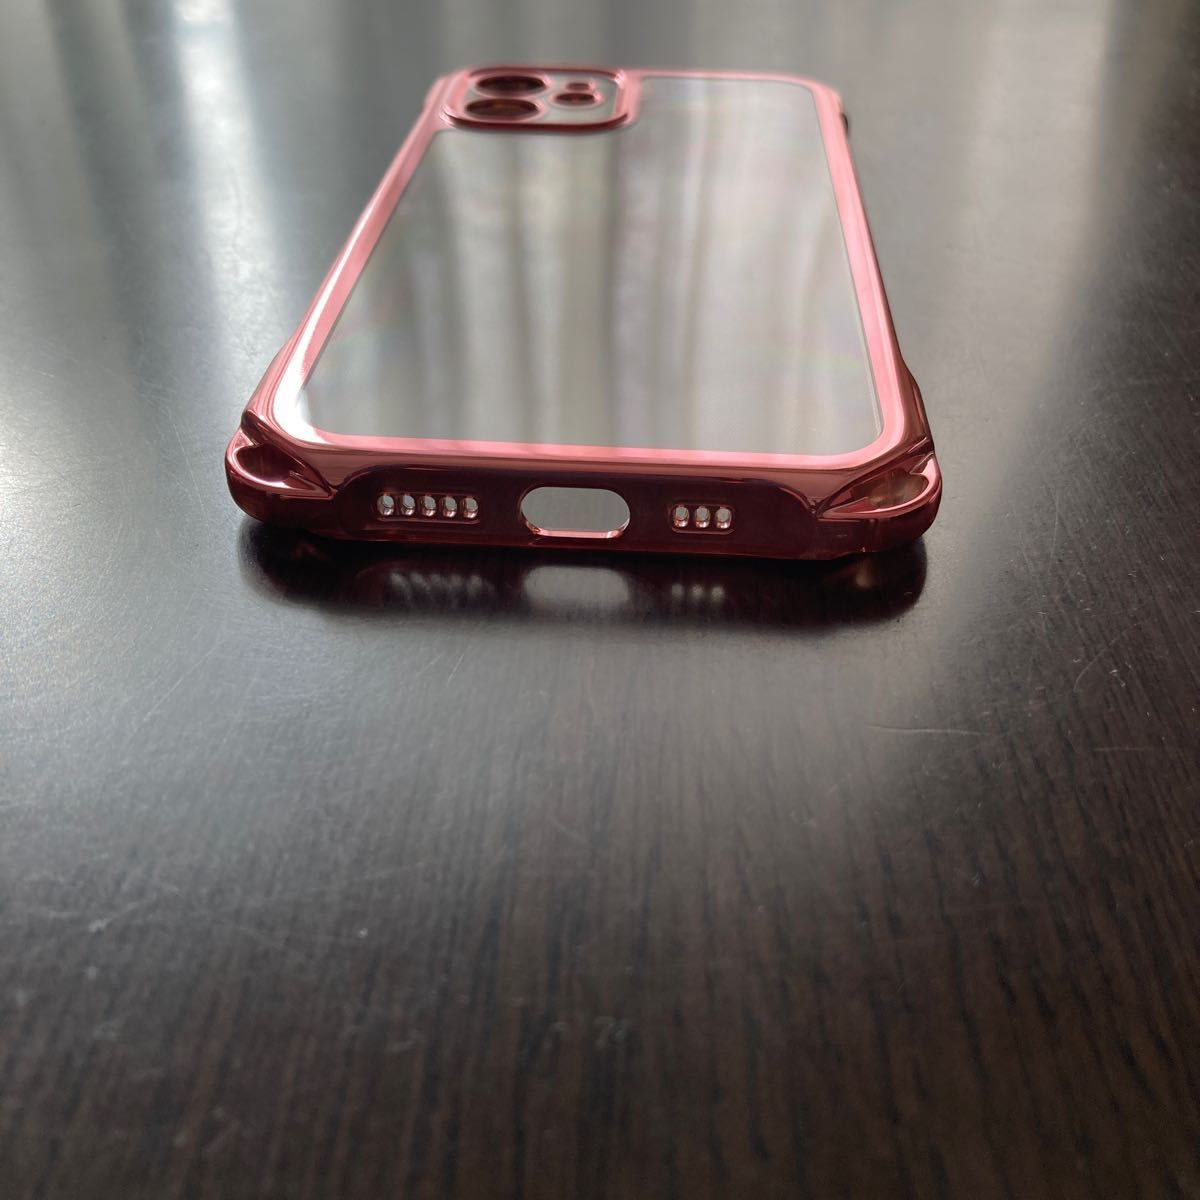 iPhone12 スマホケース ローズゴールド クリアカバー 薄型 軽量 耐衝撃 ネックストラップ ワイヤレス充電対応